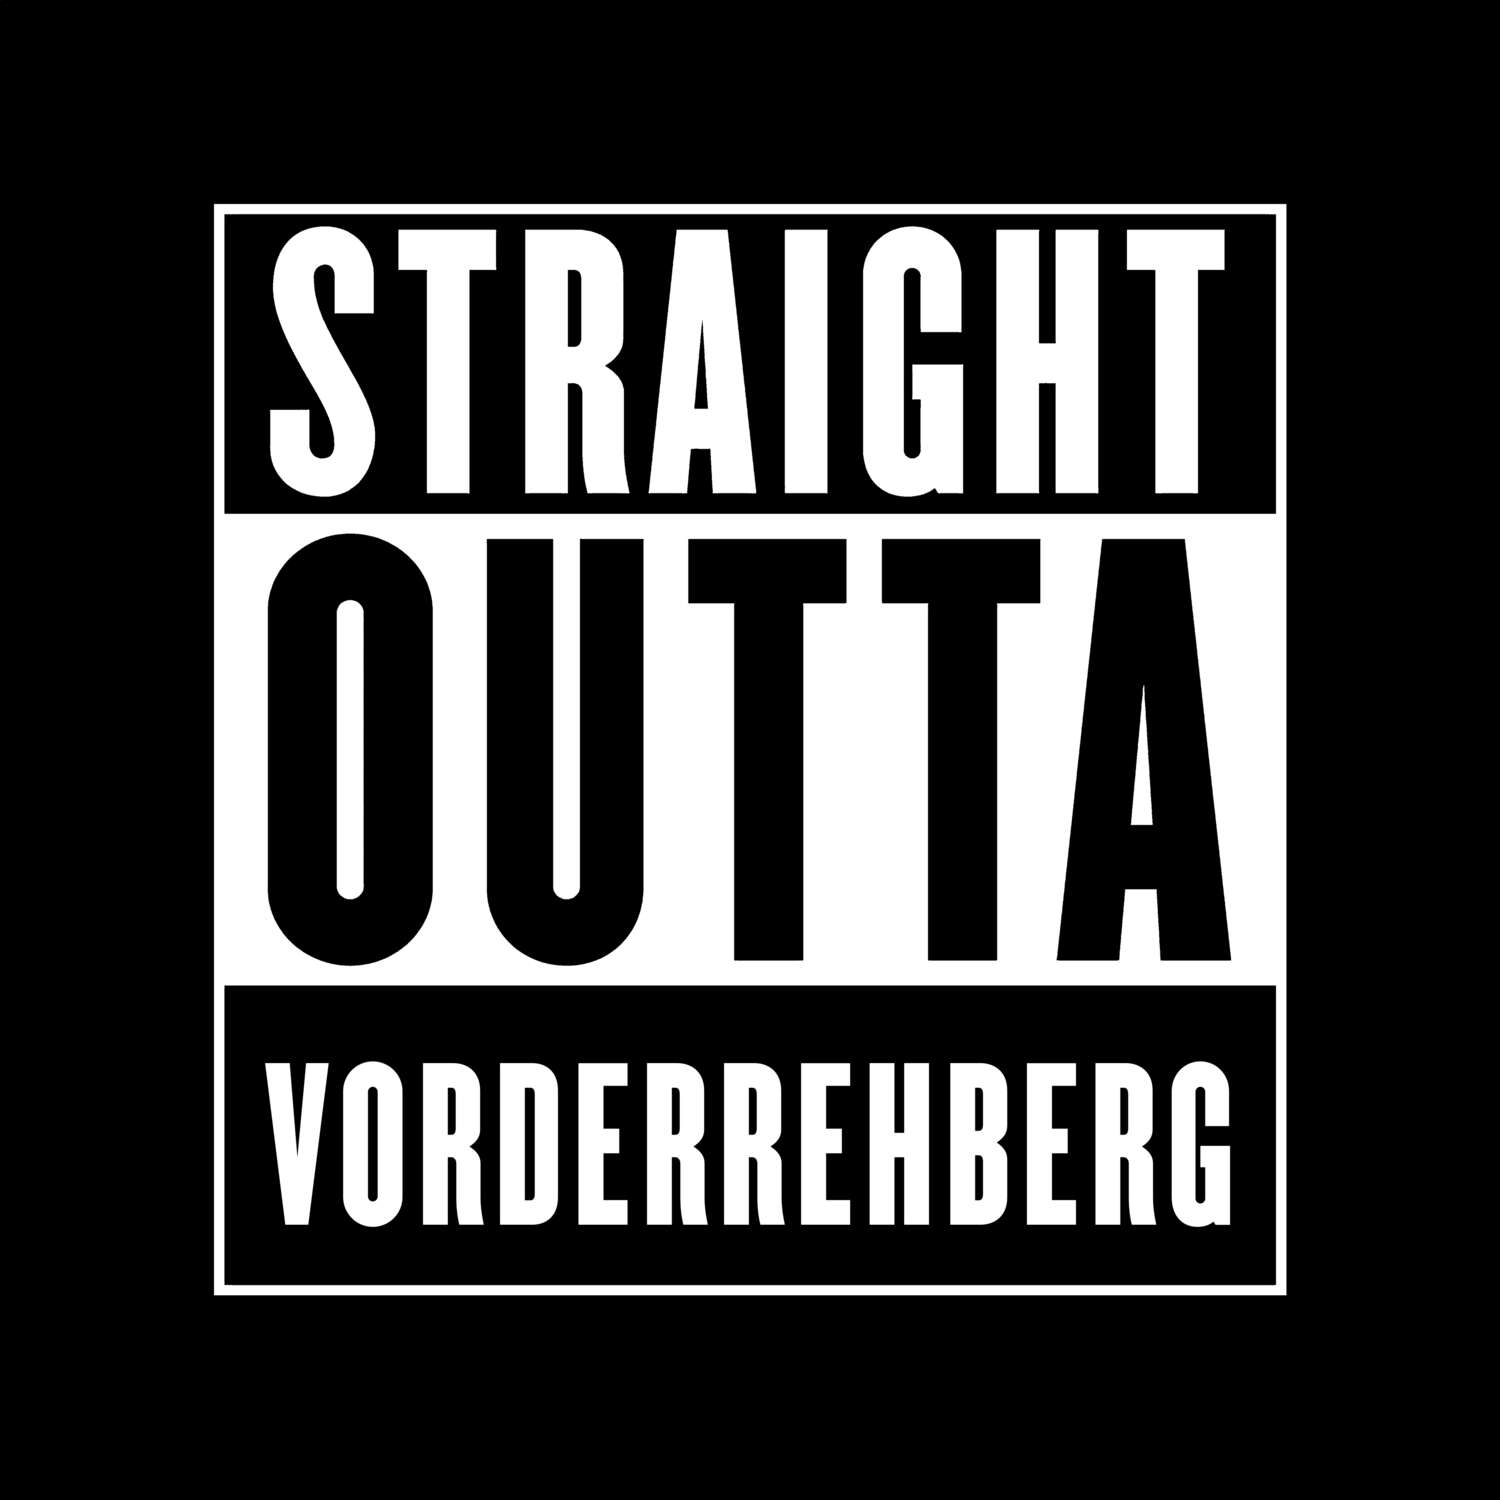 Vorderrehberg T-Shirt »Straight Outta«